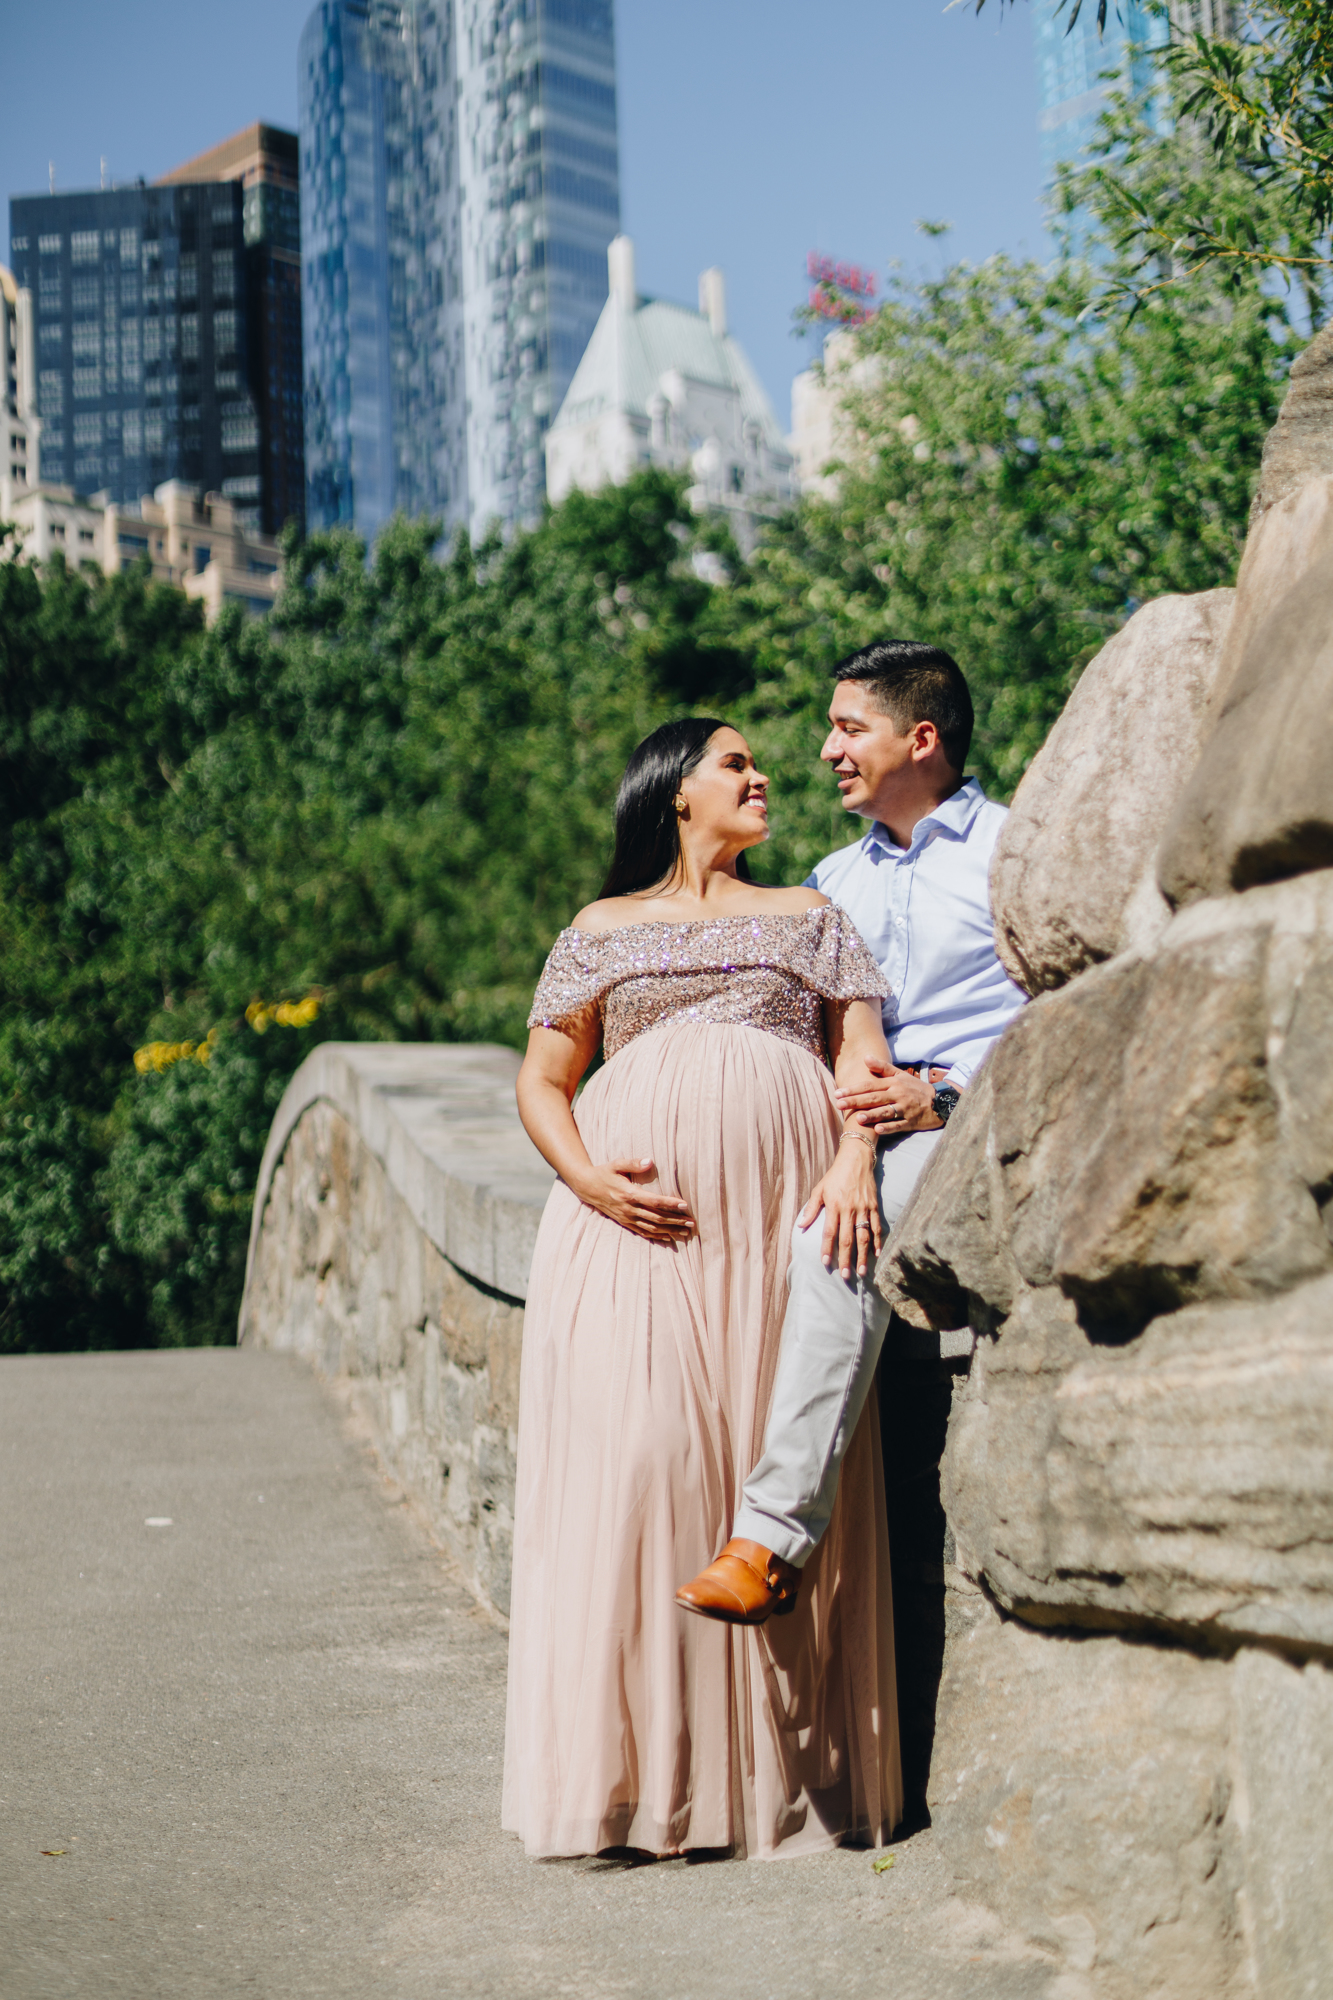 Magical Central Park Maternity Photos